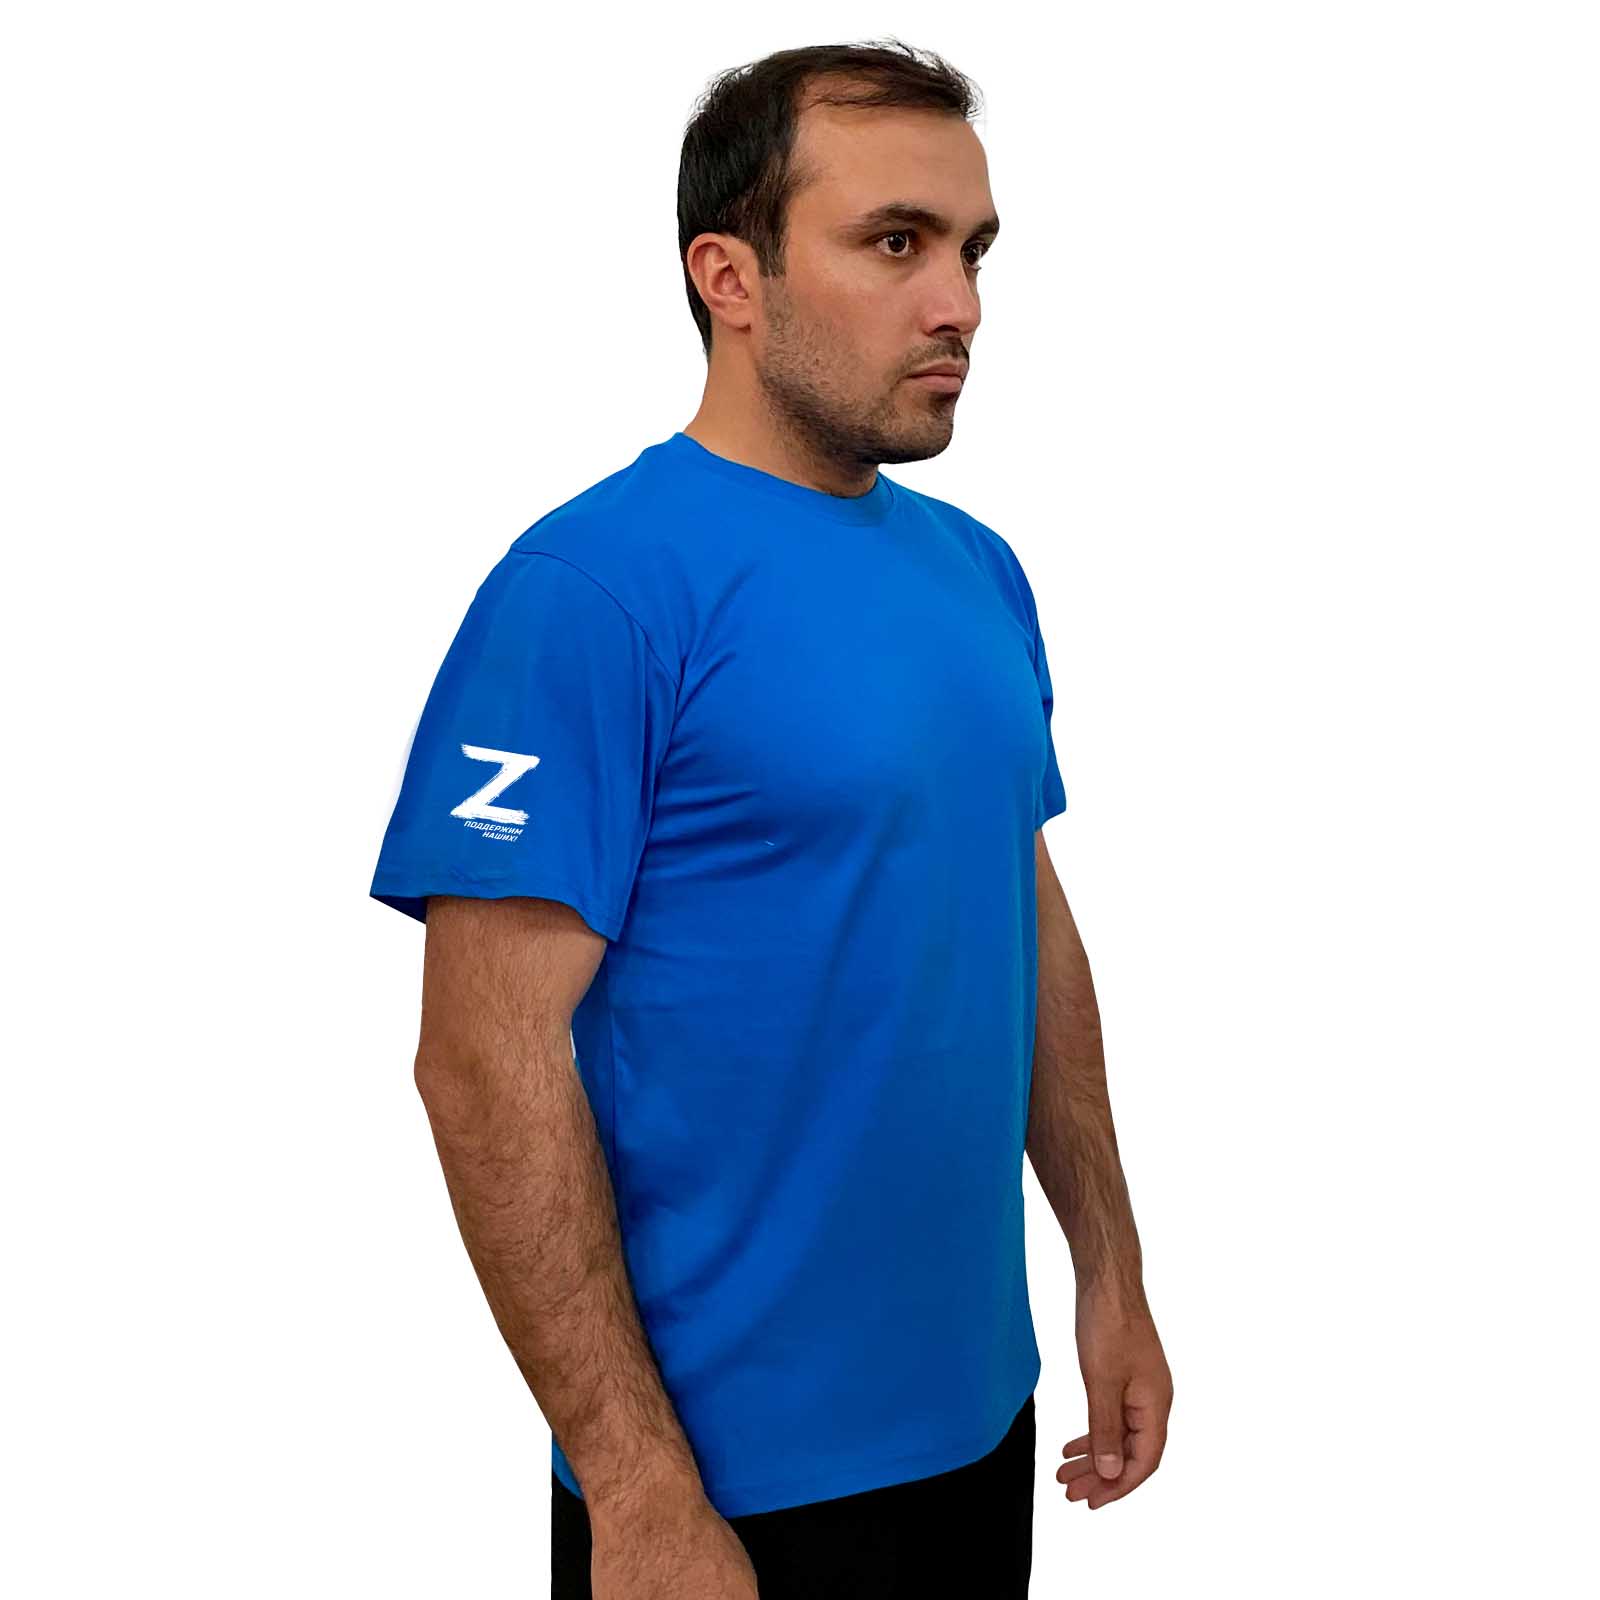 Купить оригинальную мужскую футболку Z с доставкой